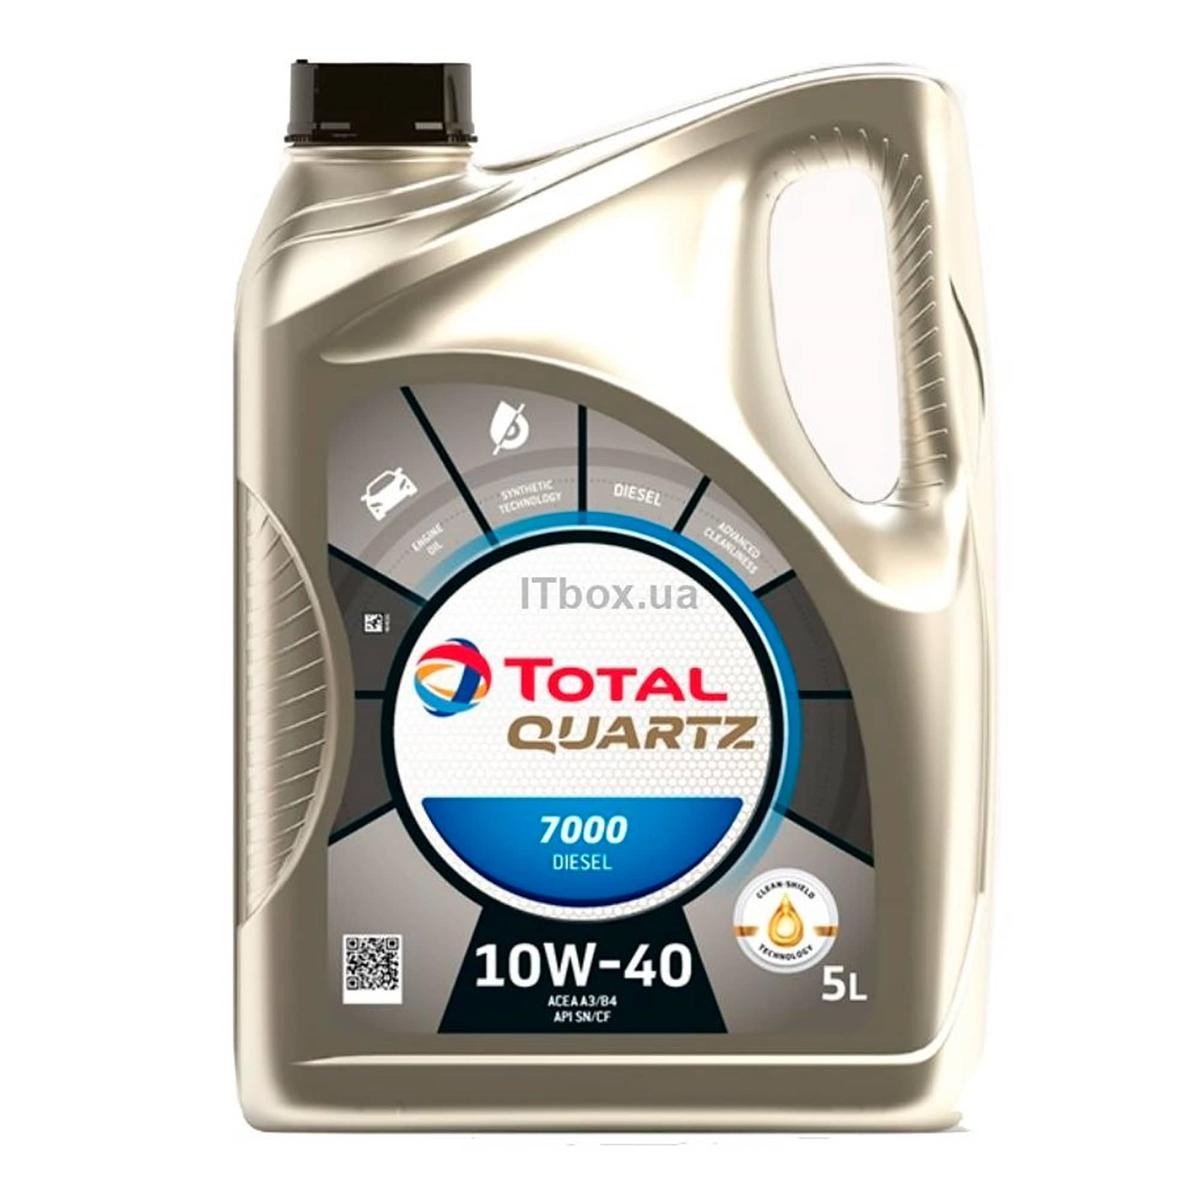 TOTAL Quartz, 7000 Diesel 10W-40, 5L, Deels synthetische olie Olie 2202844 koop goedkoop